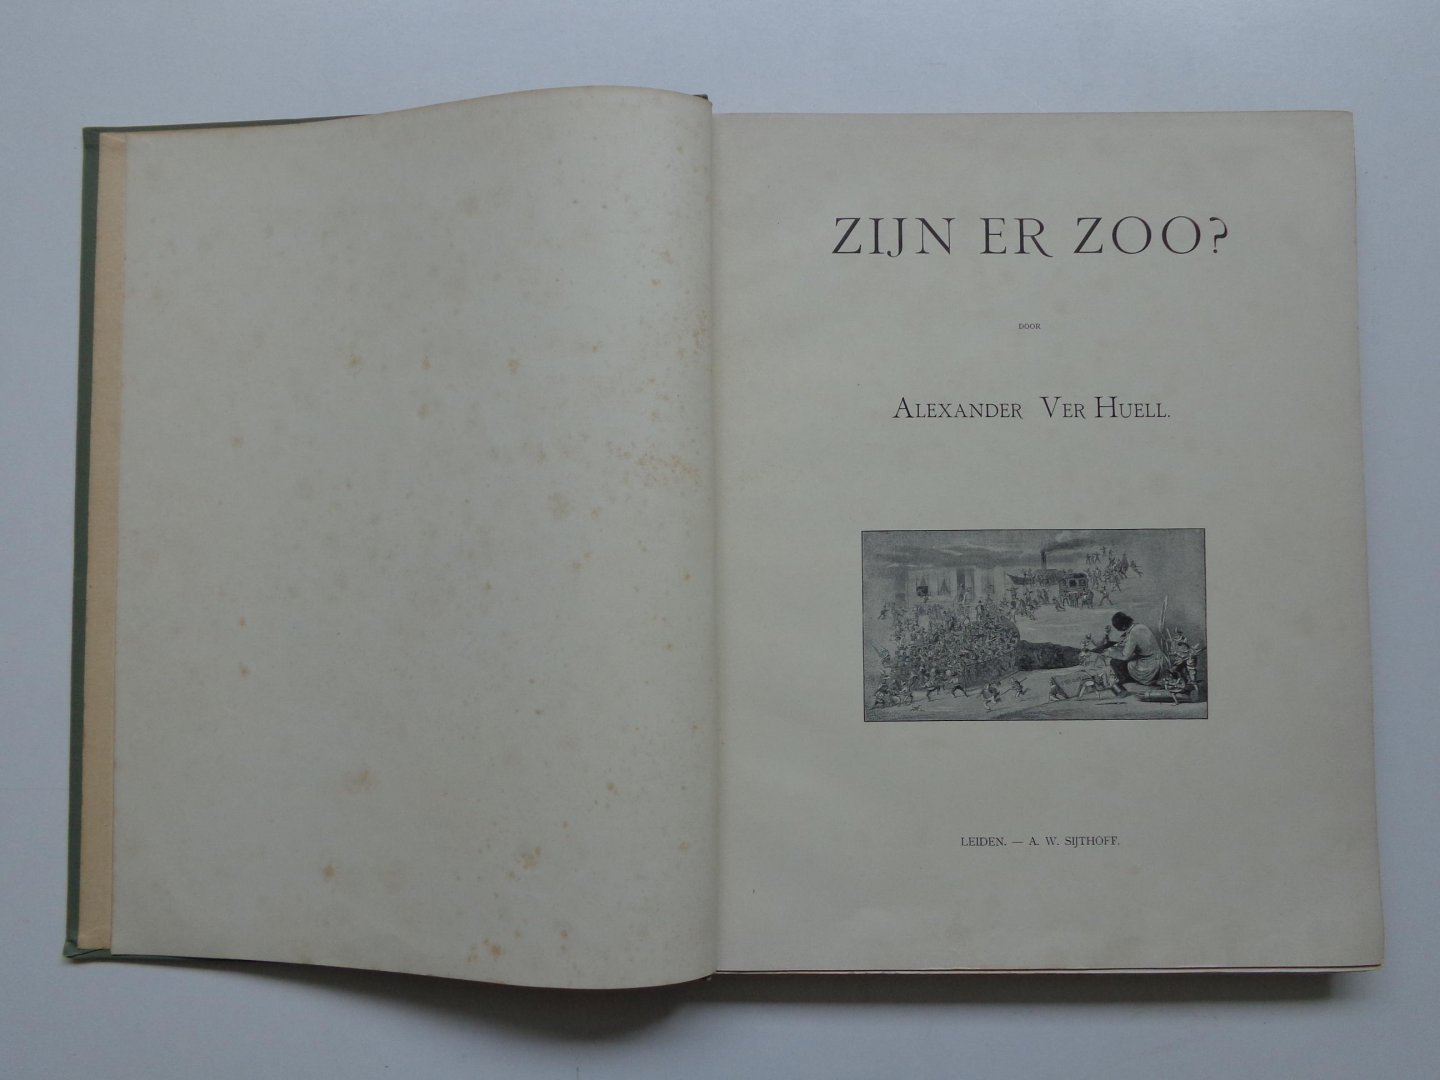 Ver Huell, Alexander - De Werken van Alexander Ver Huell, Zijn er Zoo?